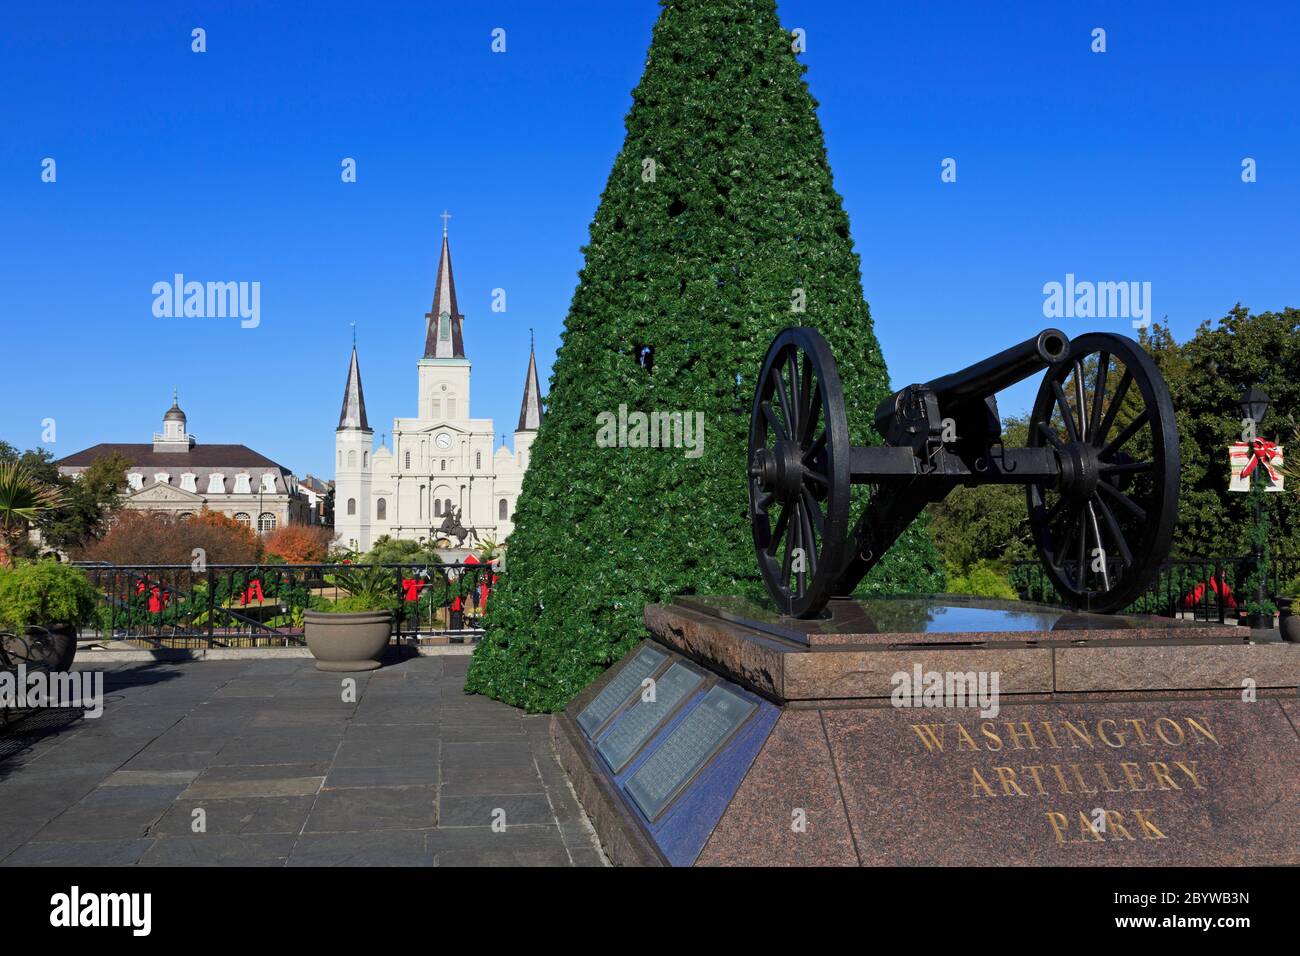 Washington Artillery Park, quartier français, la Nouvelle-Orléans, Louisiane, États-Unis Banque D'Images